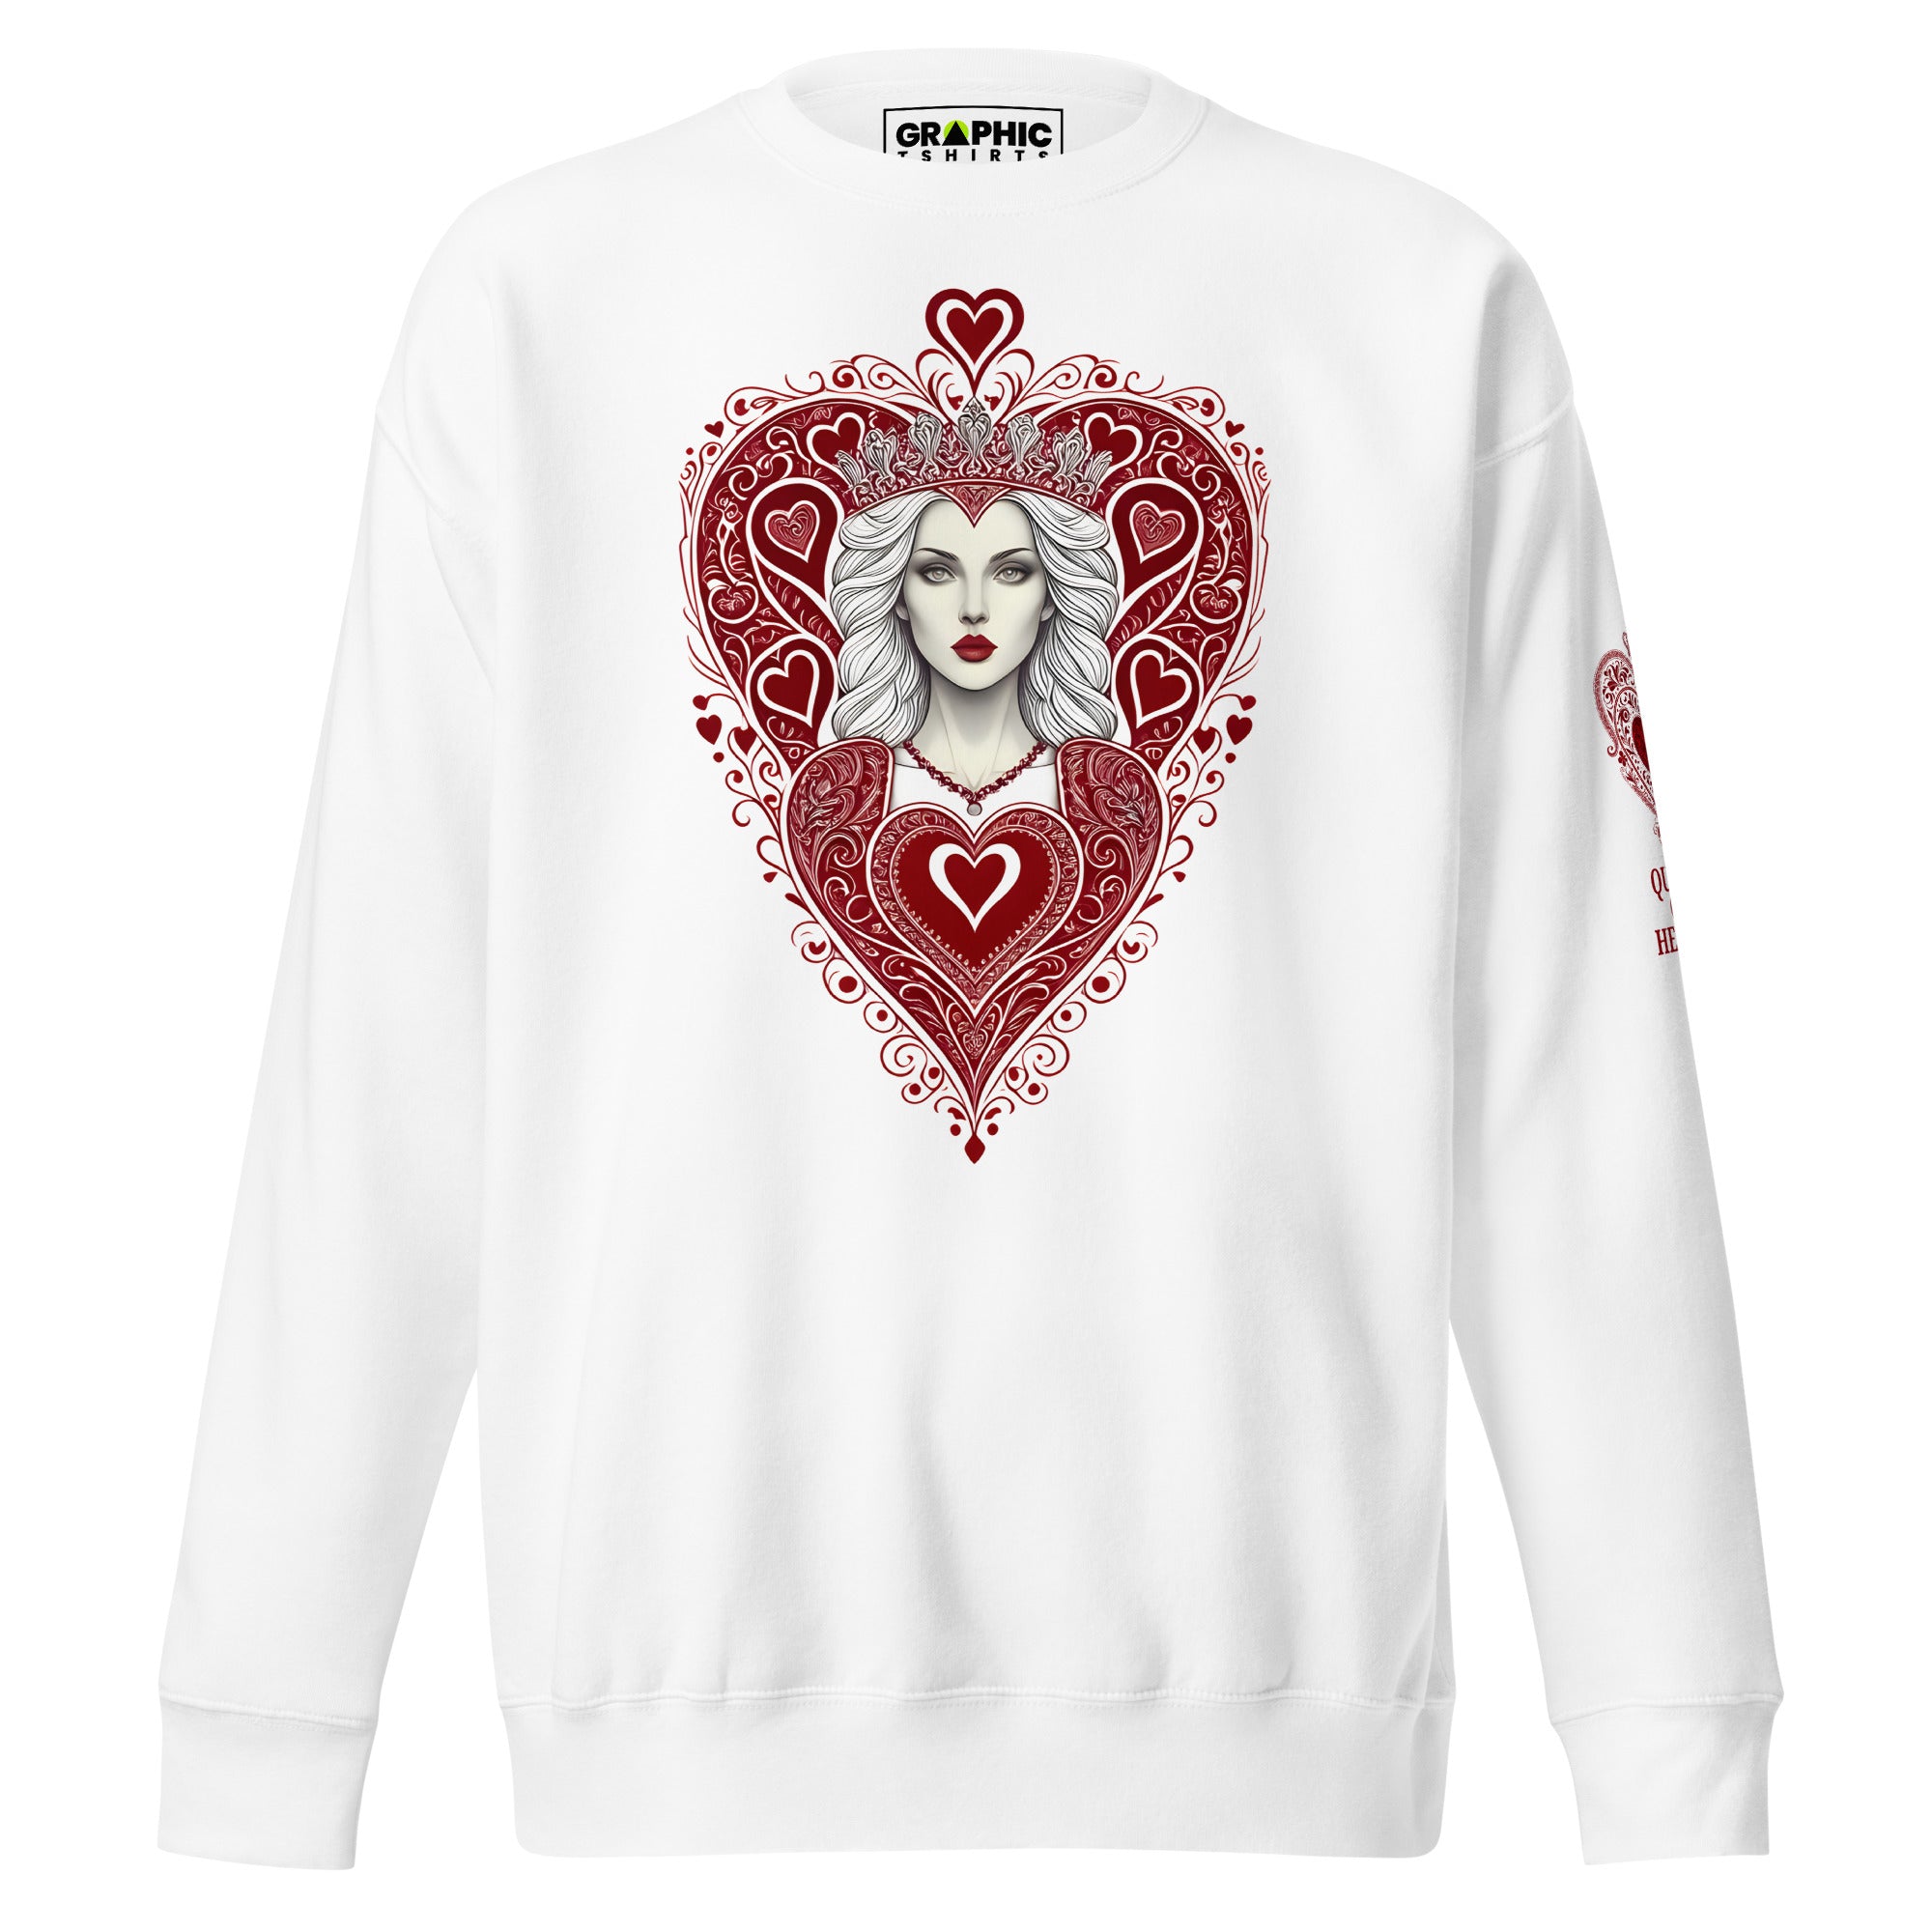 Unisex Premium Sweatshirt - Queen Of Hearts Series v.31